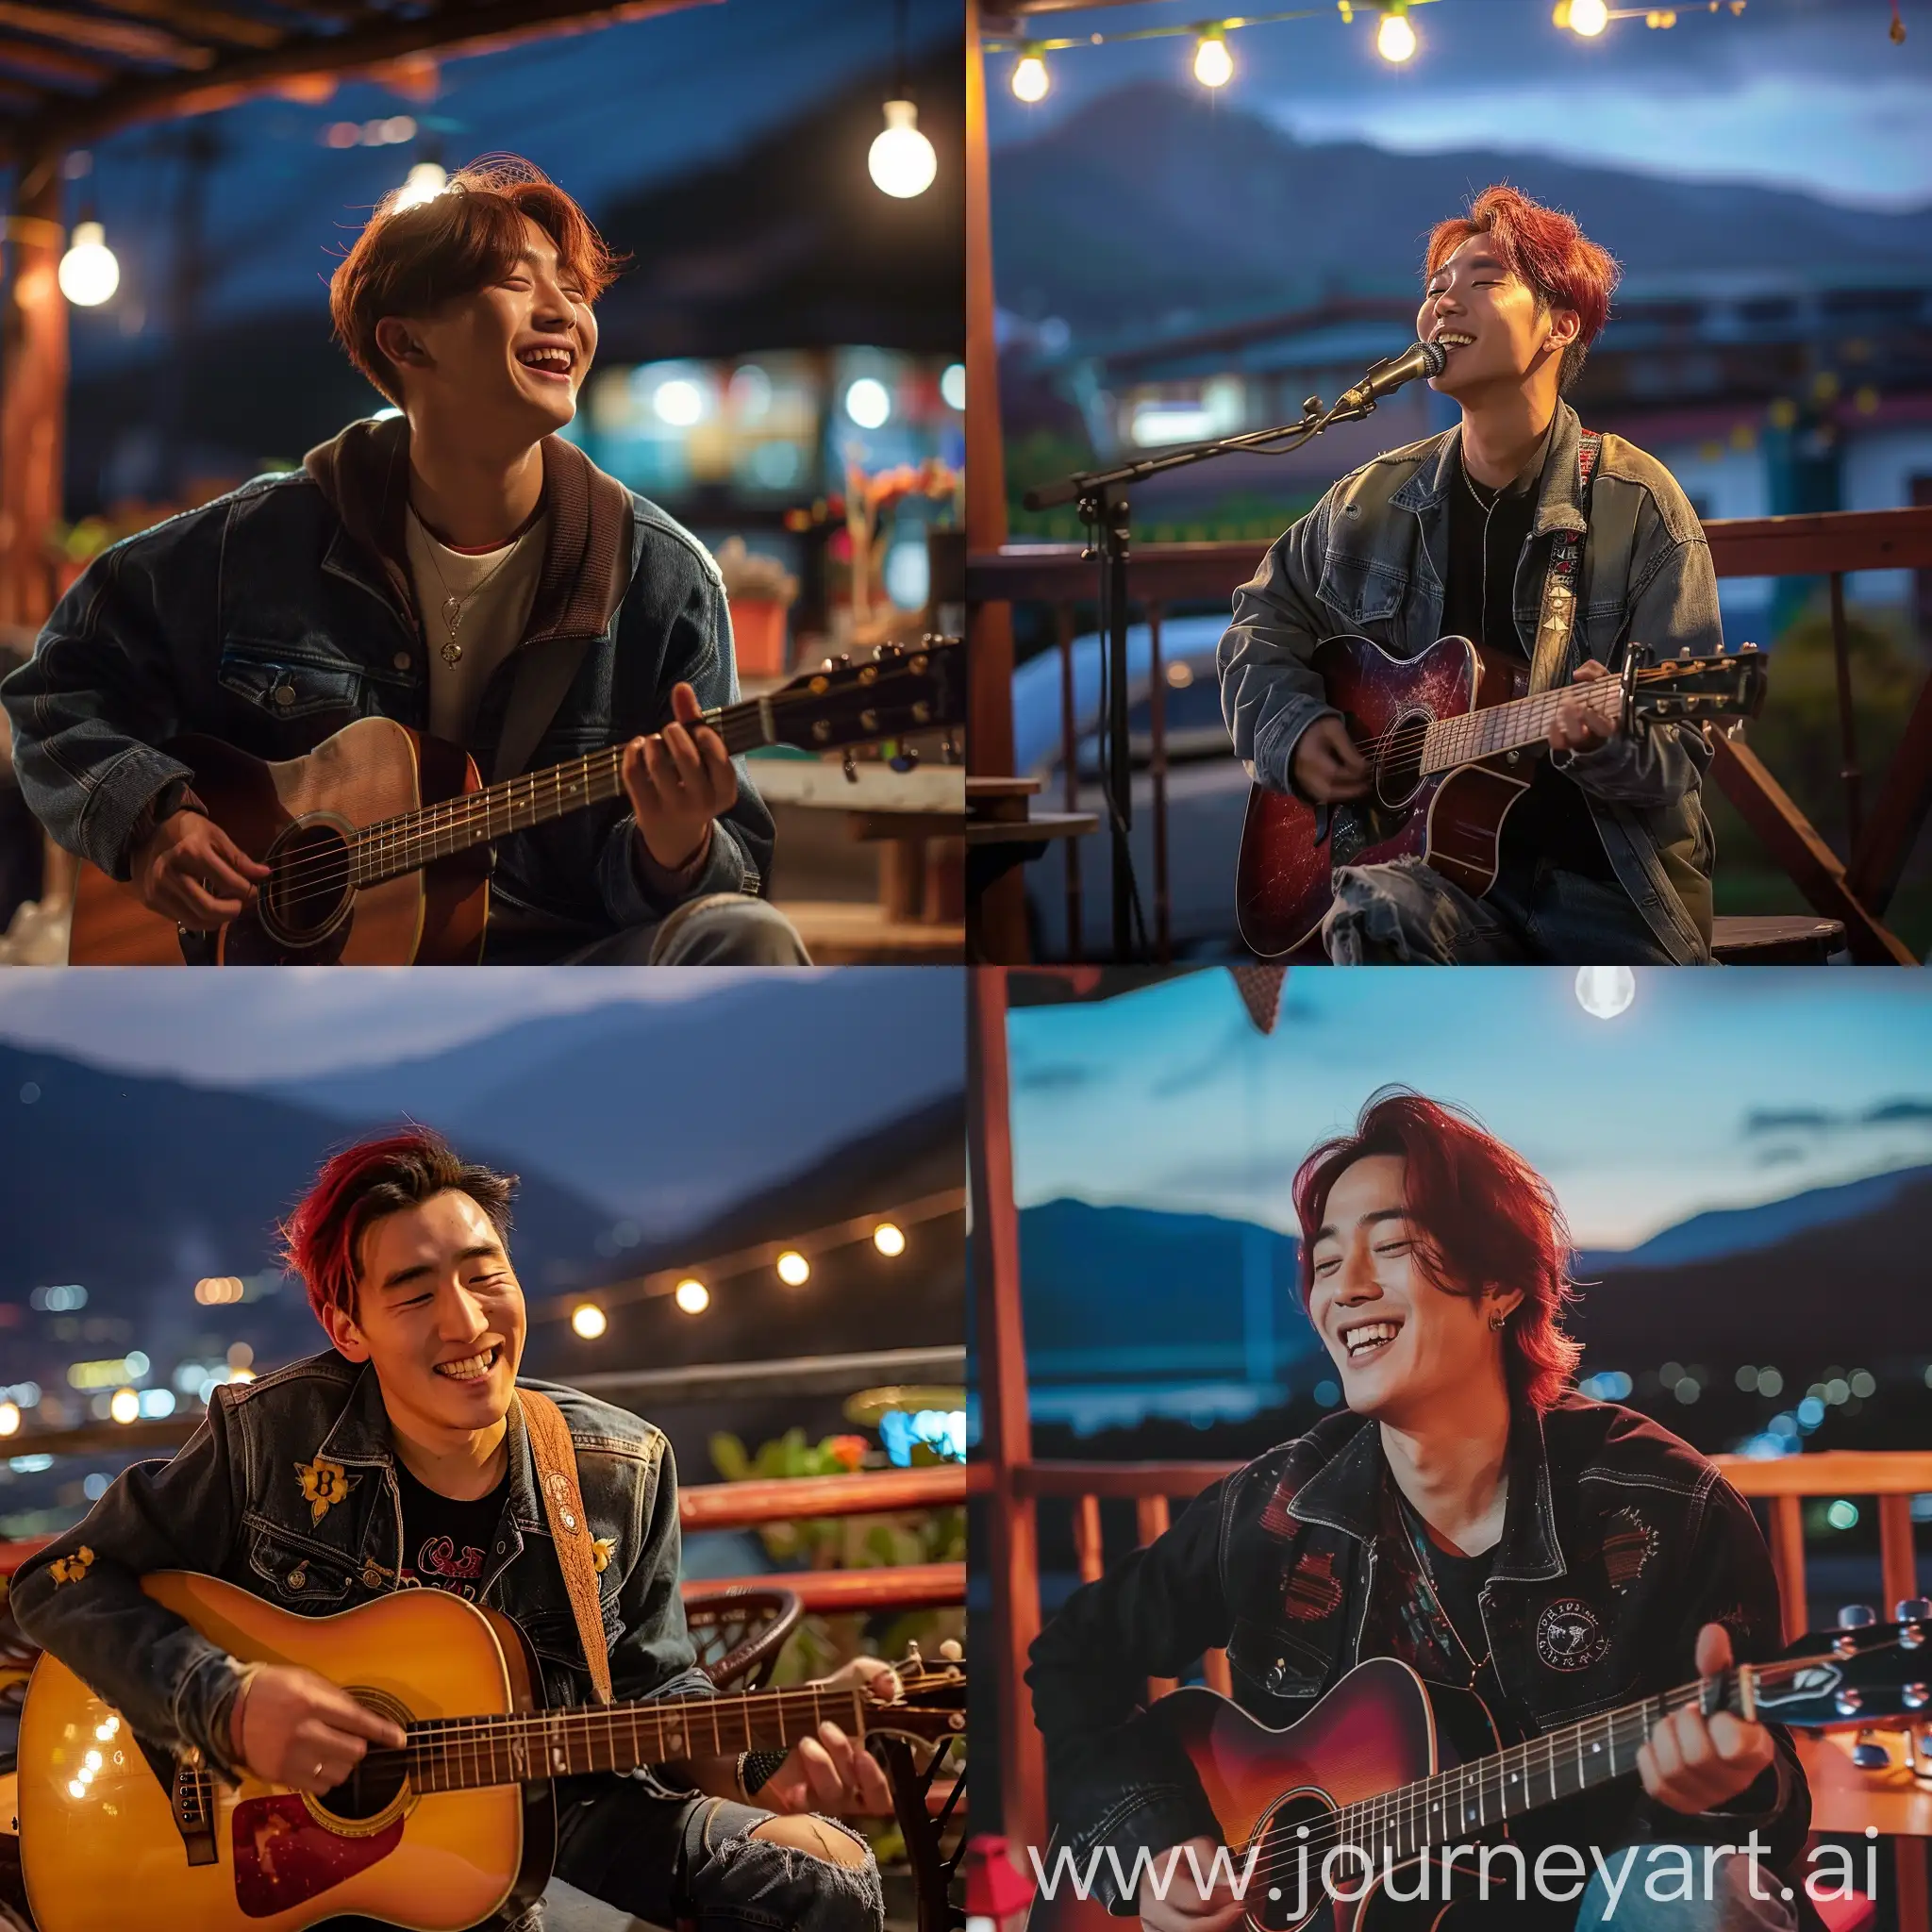 Young-Korean-Man-Playing-Guitar-at-Night-Cafe-with-Himalayan-Mountain-View